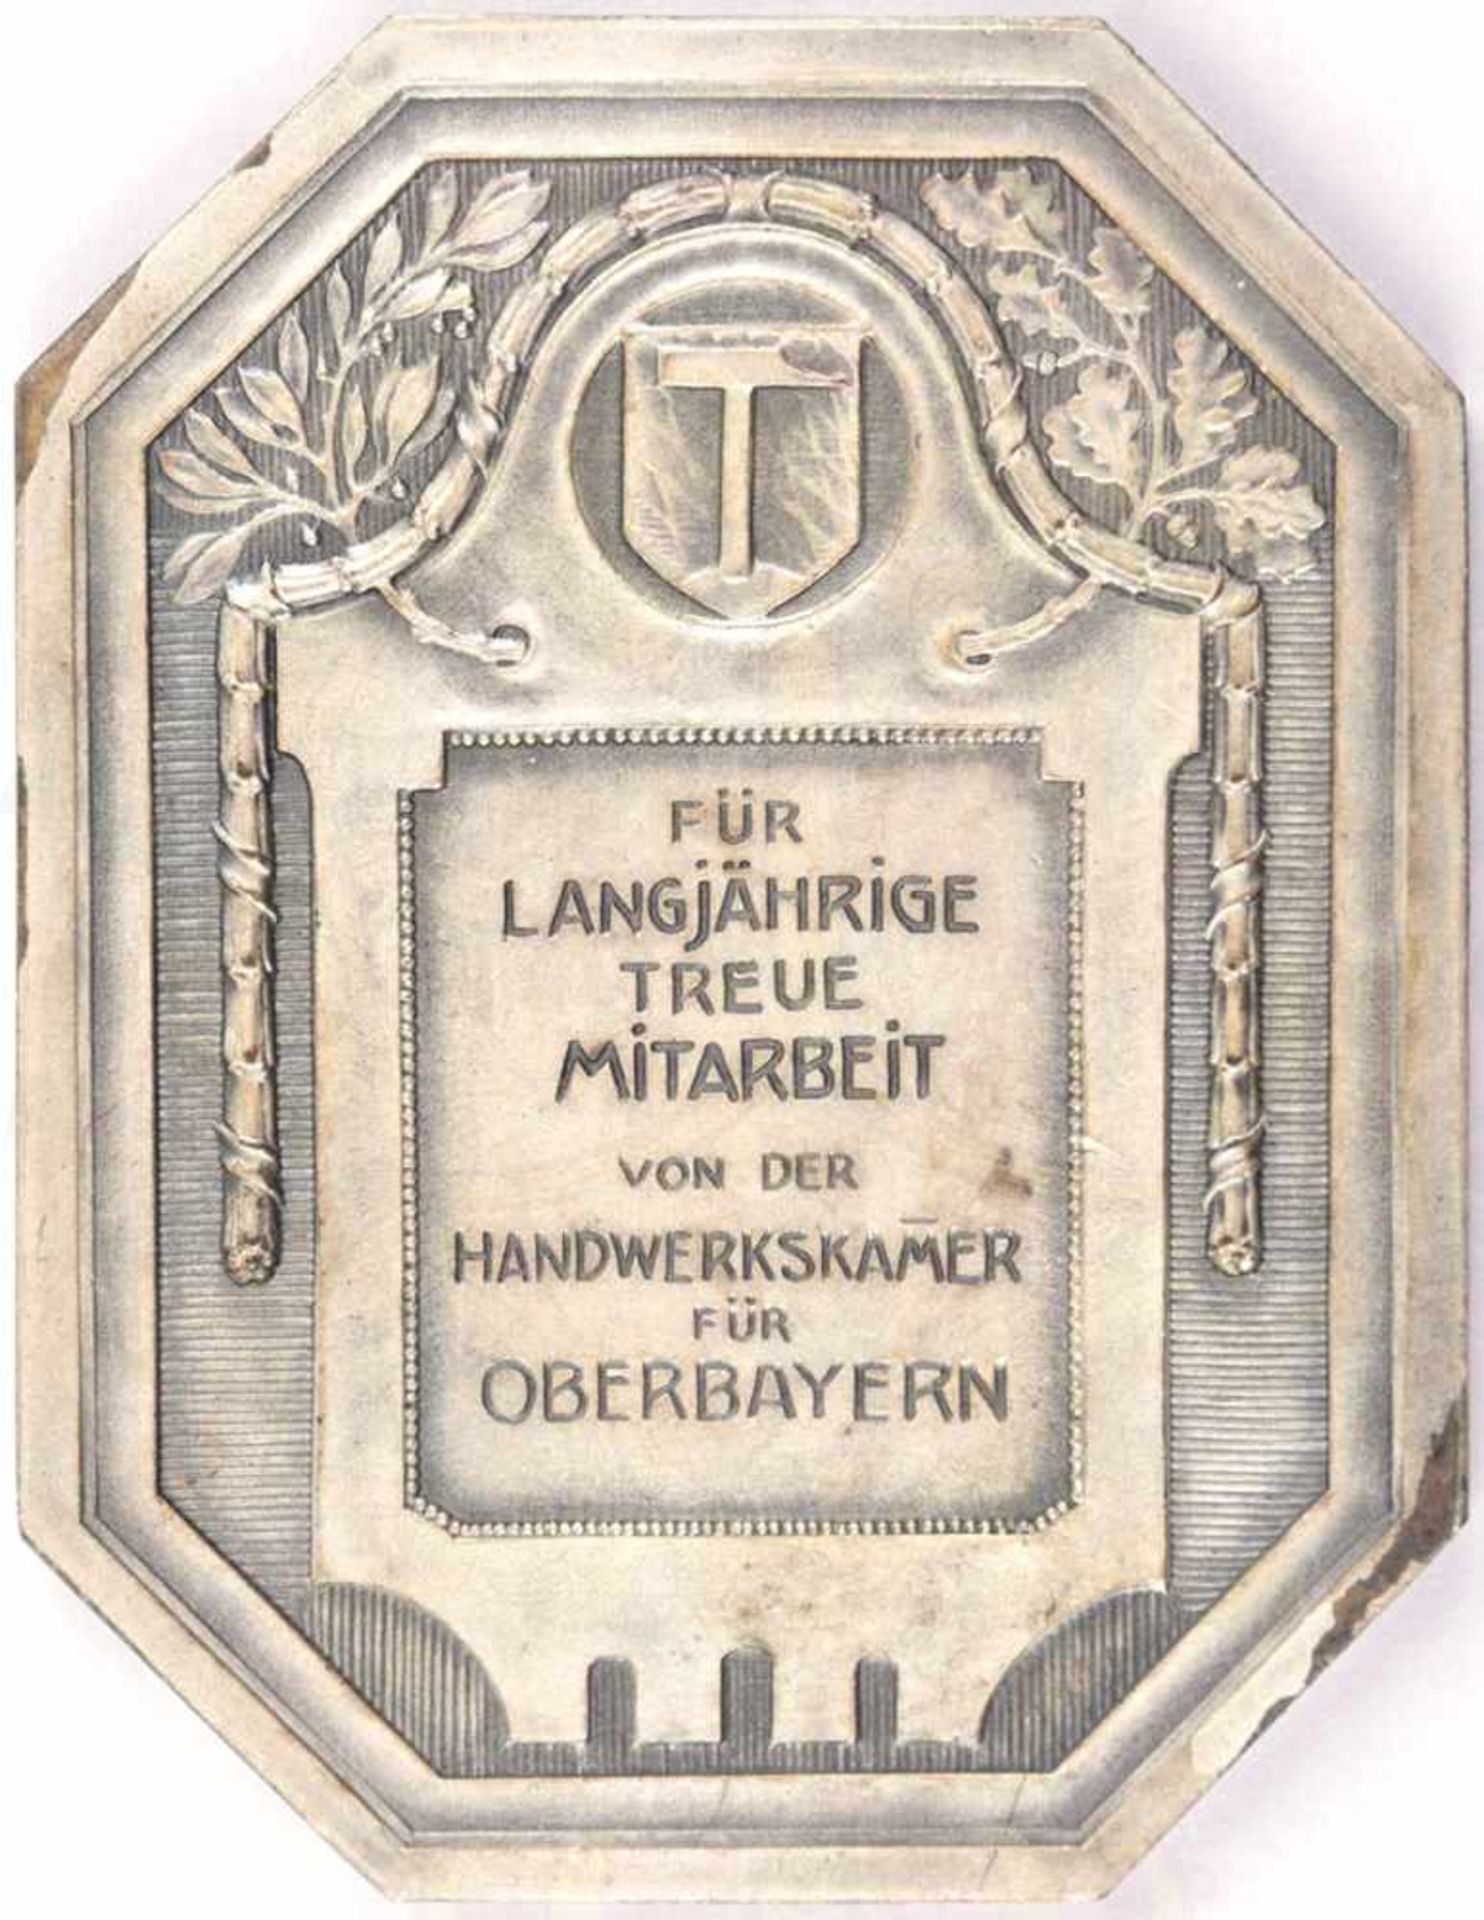 MEDAILLE FÜR LANGJÄHRIGE TREUE MITARBEIT, Handwerkskammer Oberbayern, um 1910, achteckig, - Bild 3 aus 3